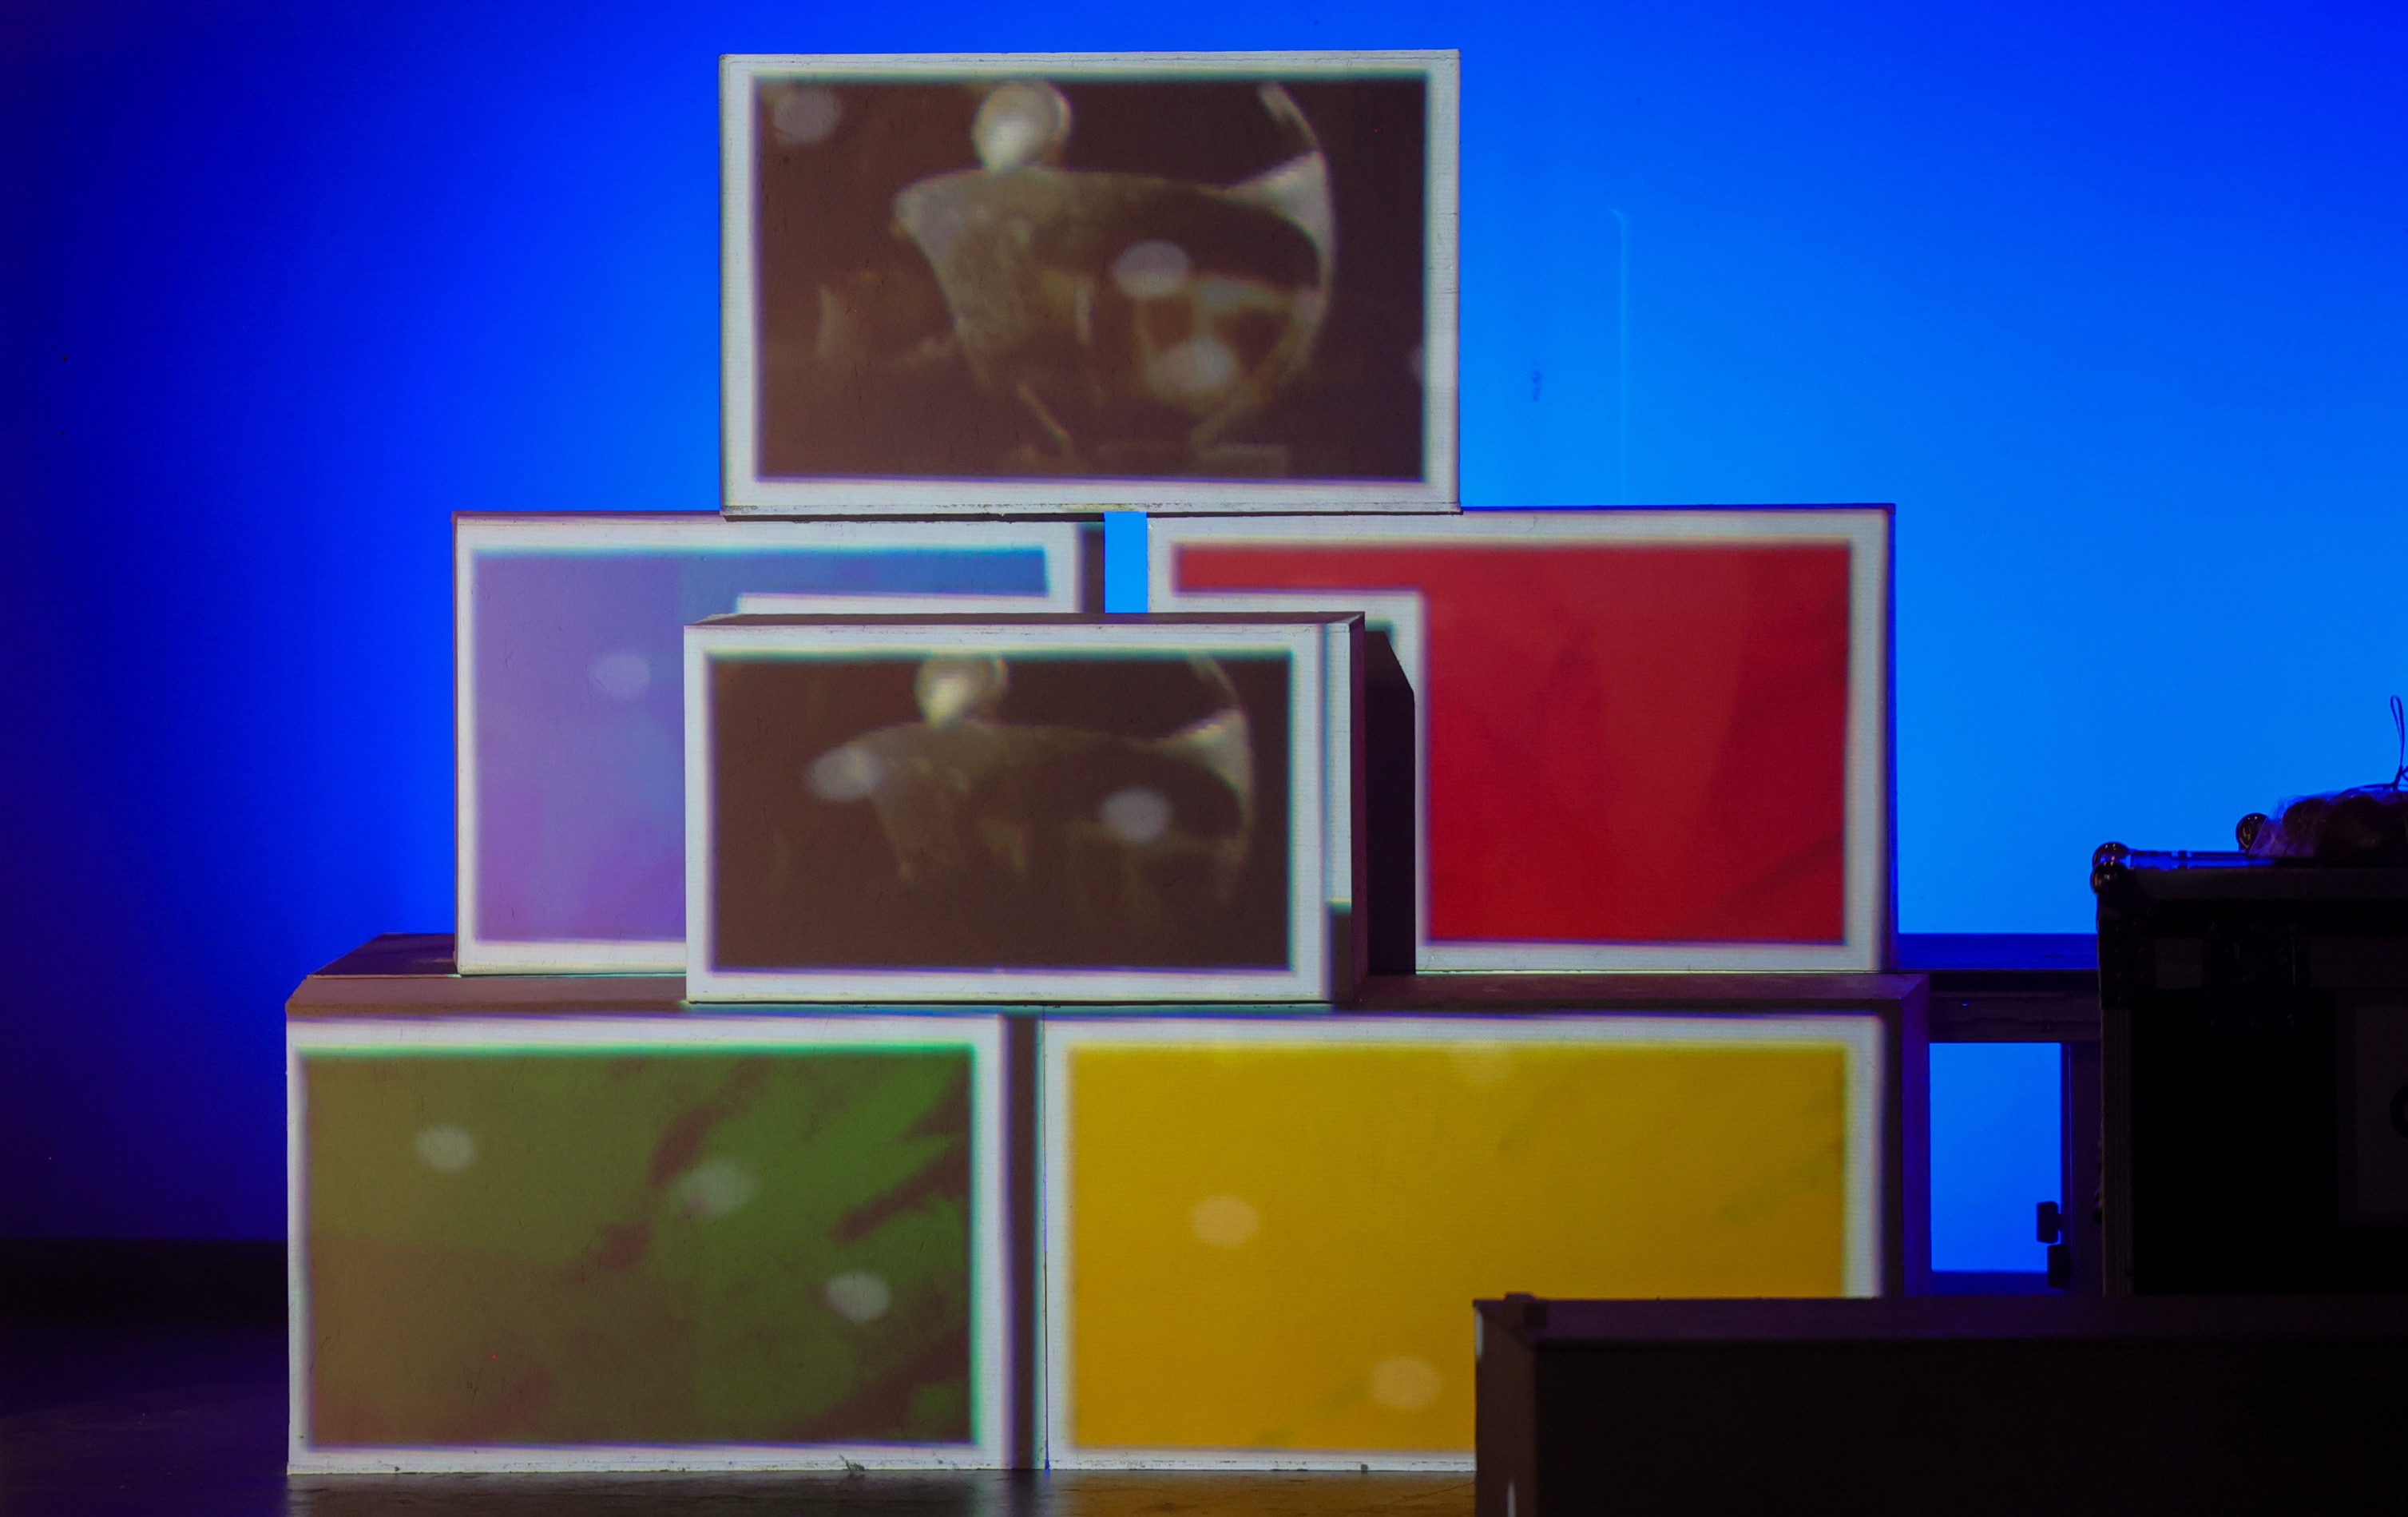 Unas cajas rectangulares con proyecciones y los colores amarillo, rojo, verde y azul